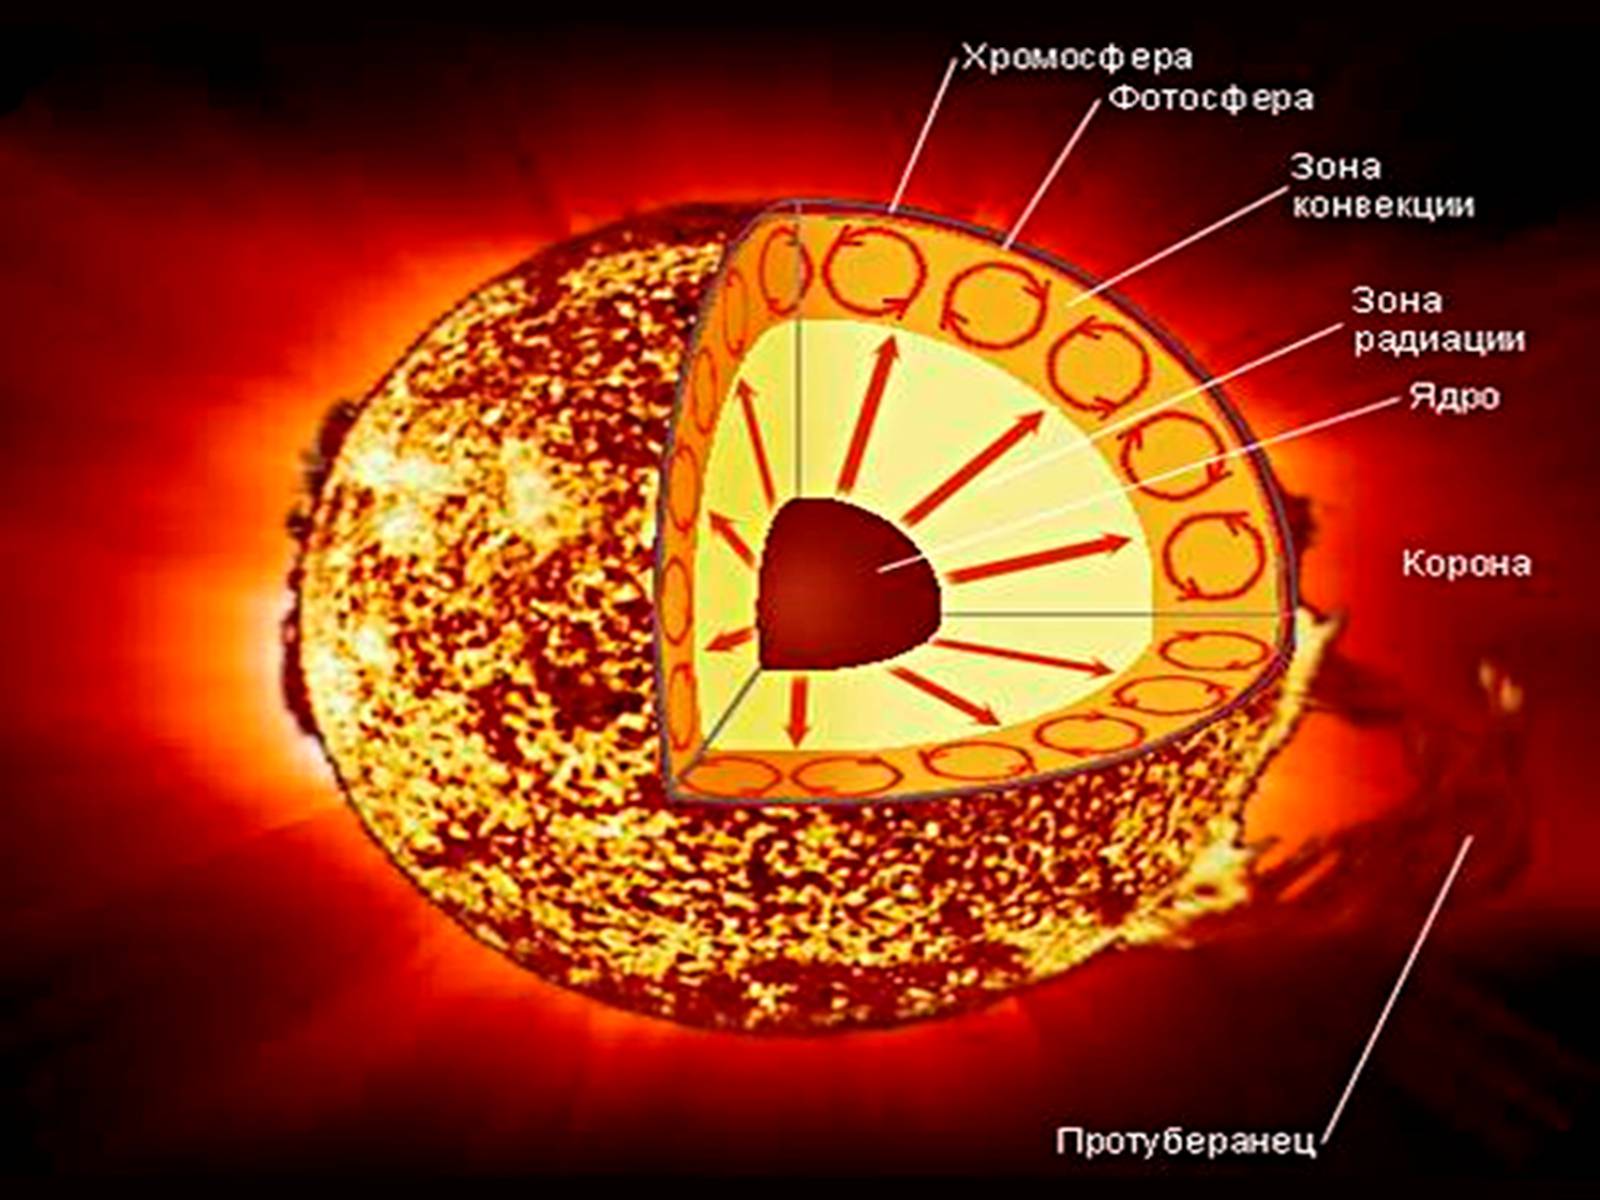 Хромосфера солнечная корона. Строение атмосферы солнца Фотосфера хромосфера Солнечная корона. Строение солнца хромосфера Фотосфера. Внутреннее строение солнца Фотосфера. Строение солнца схема.